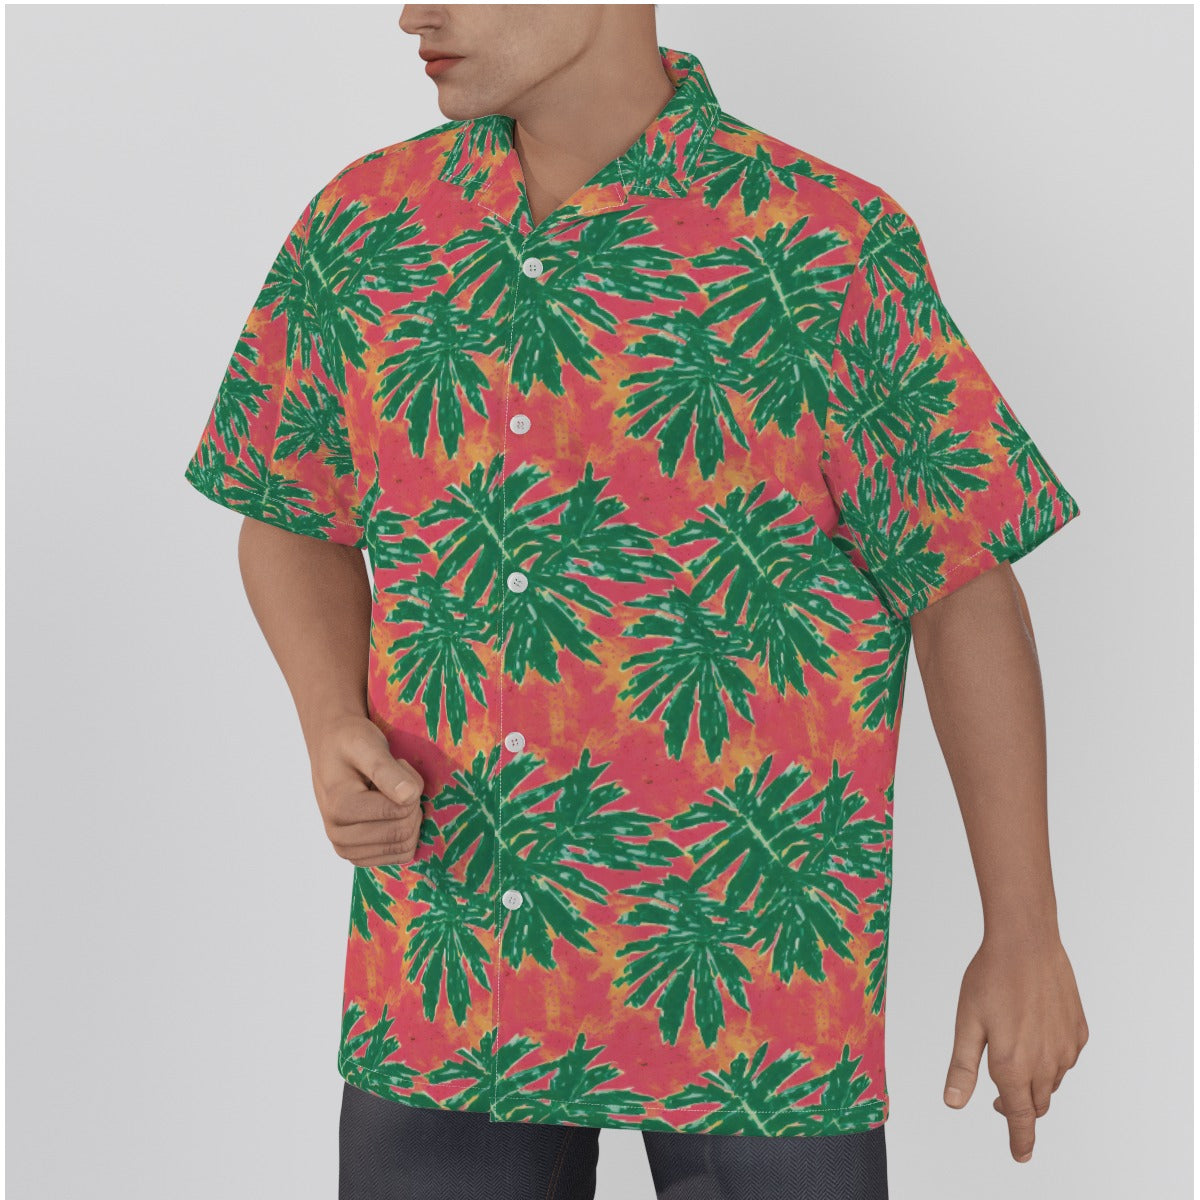 The Tomato Palm Tree Tropical Men's Hawaiian Shirt